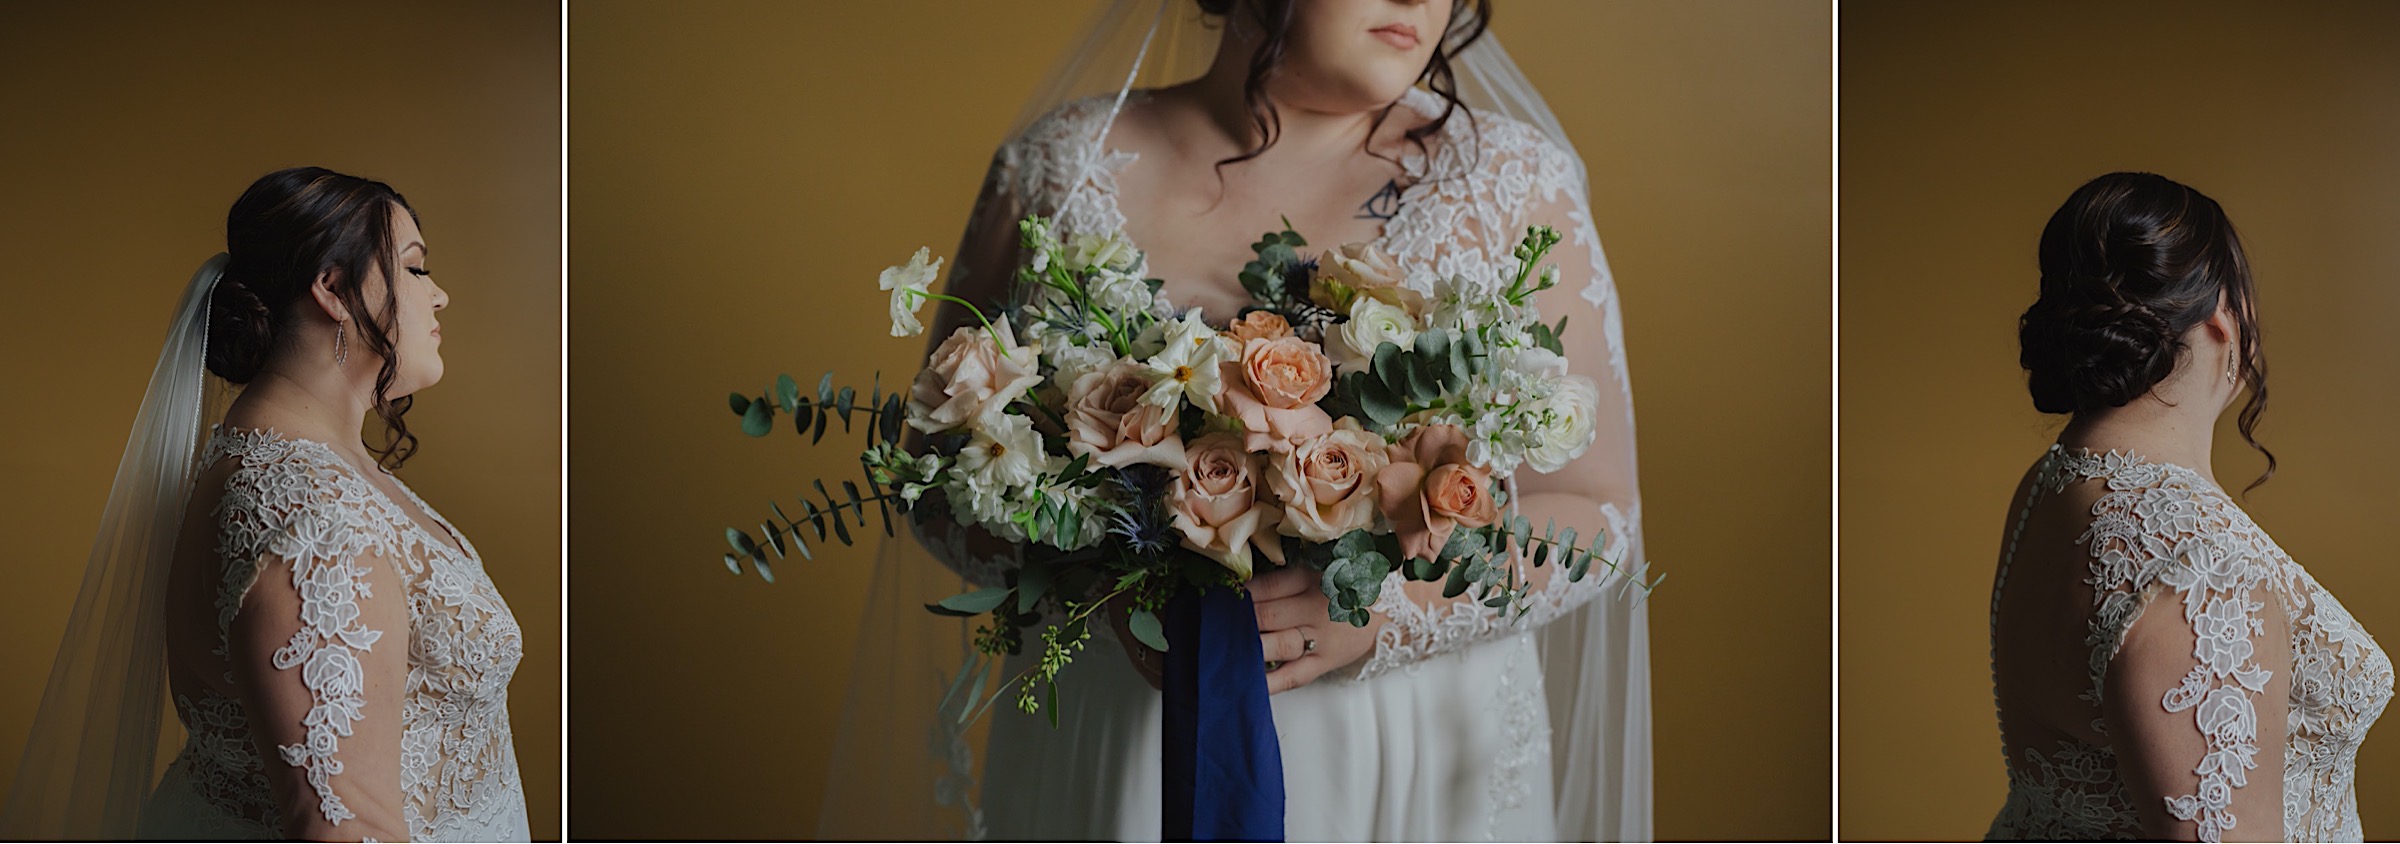 bridal-portrait-studio-yellow-background-details-lace-long-sleeve-dress-braide-updo-pink-euc-bouquet-veil-window-light